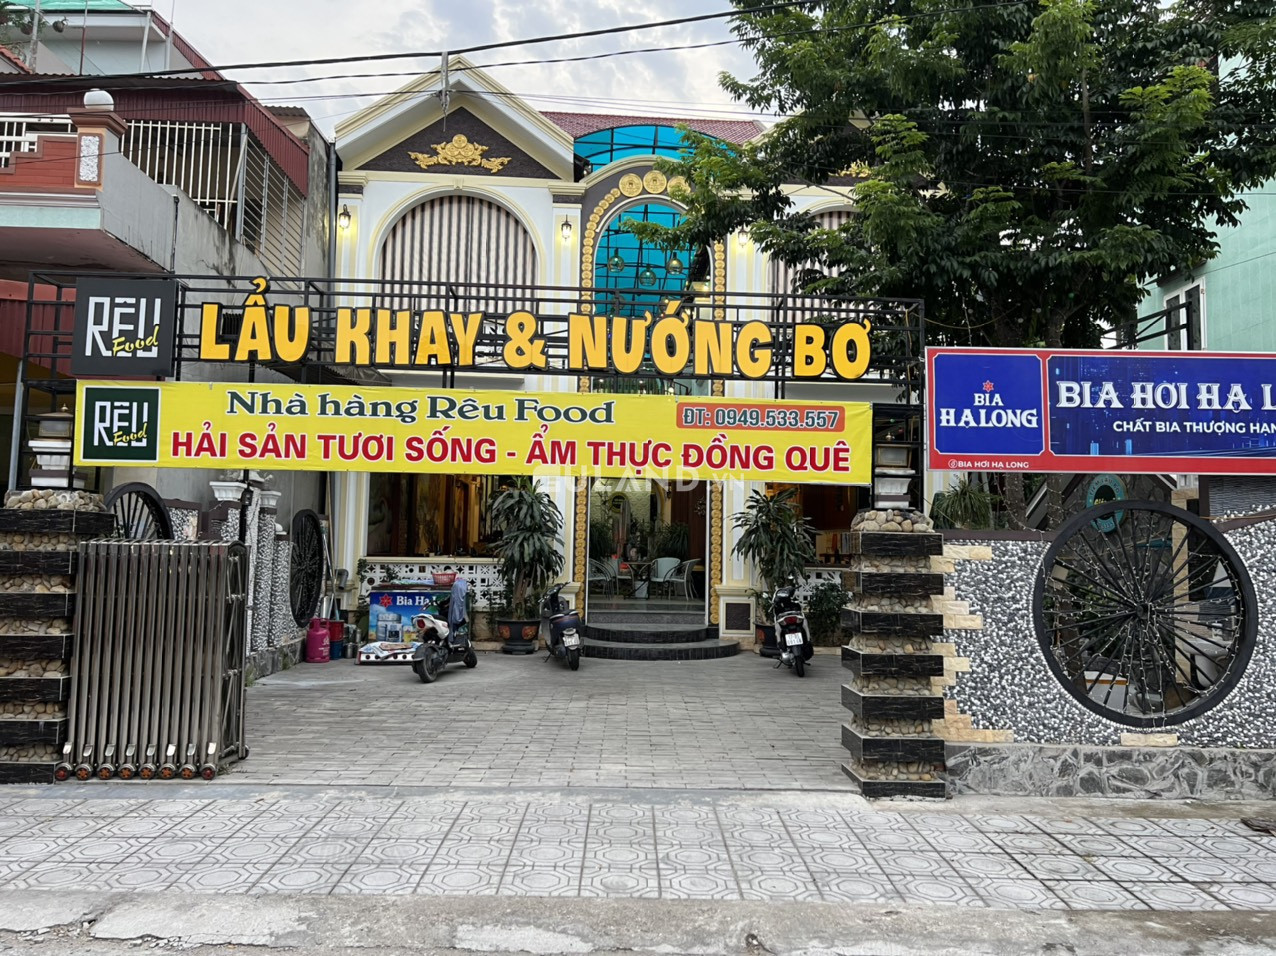 Bán nhà Rêu Food new new giá tốt vị trí vô cùng đắc địa tại Huyện Quỳnh Phụ, Tỉnh Thái Bình